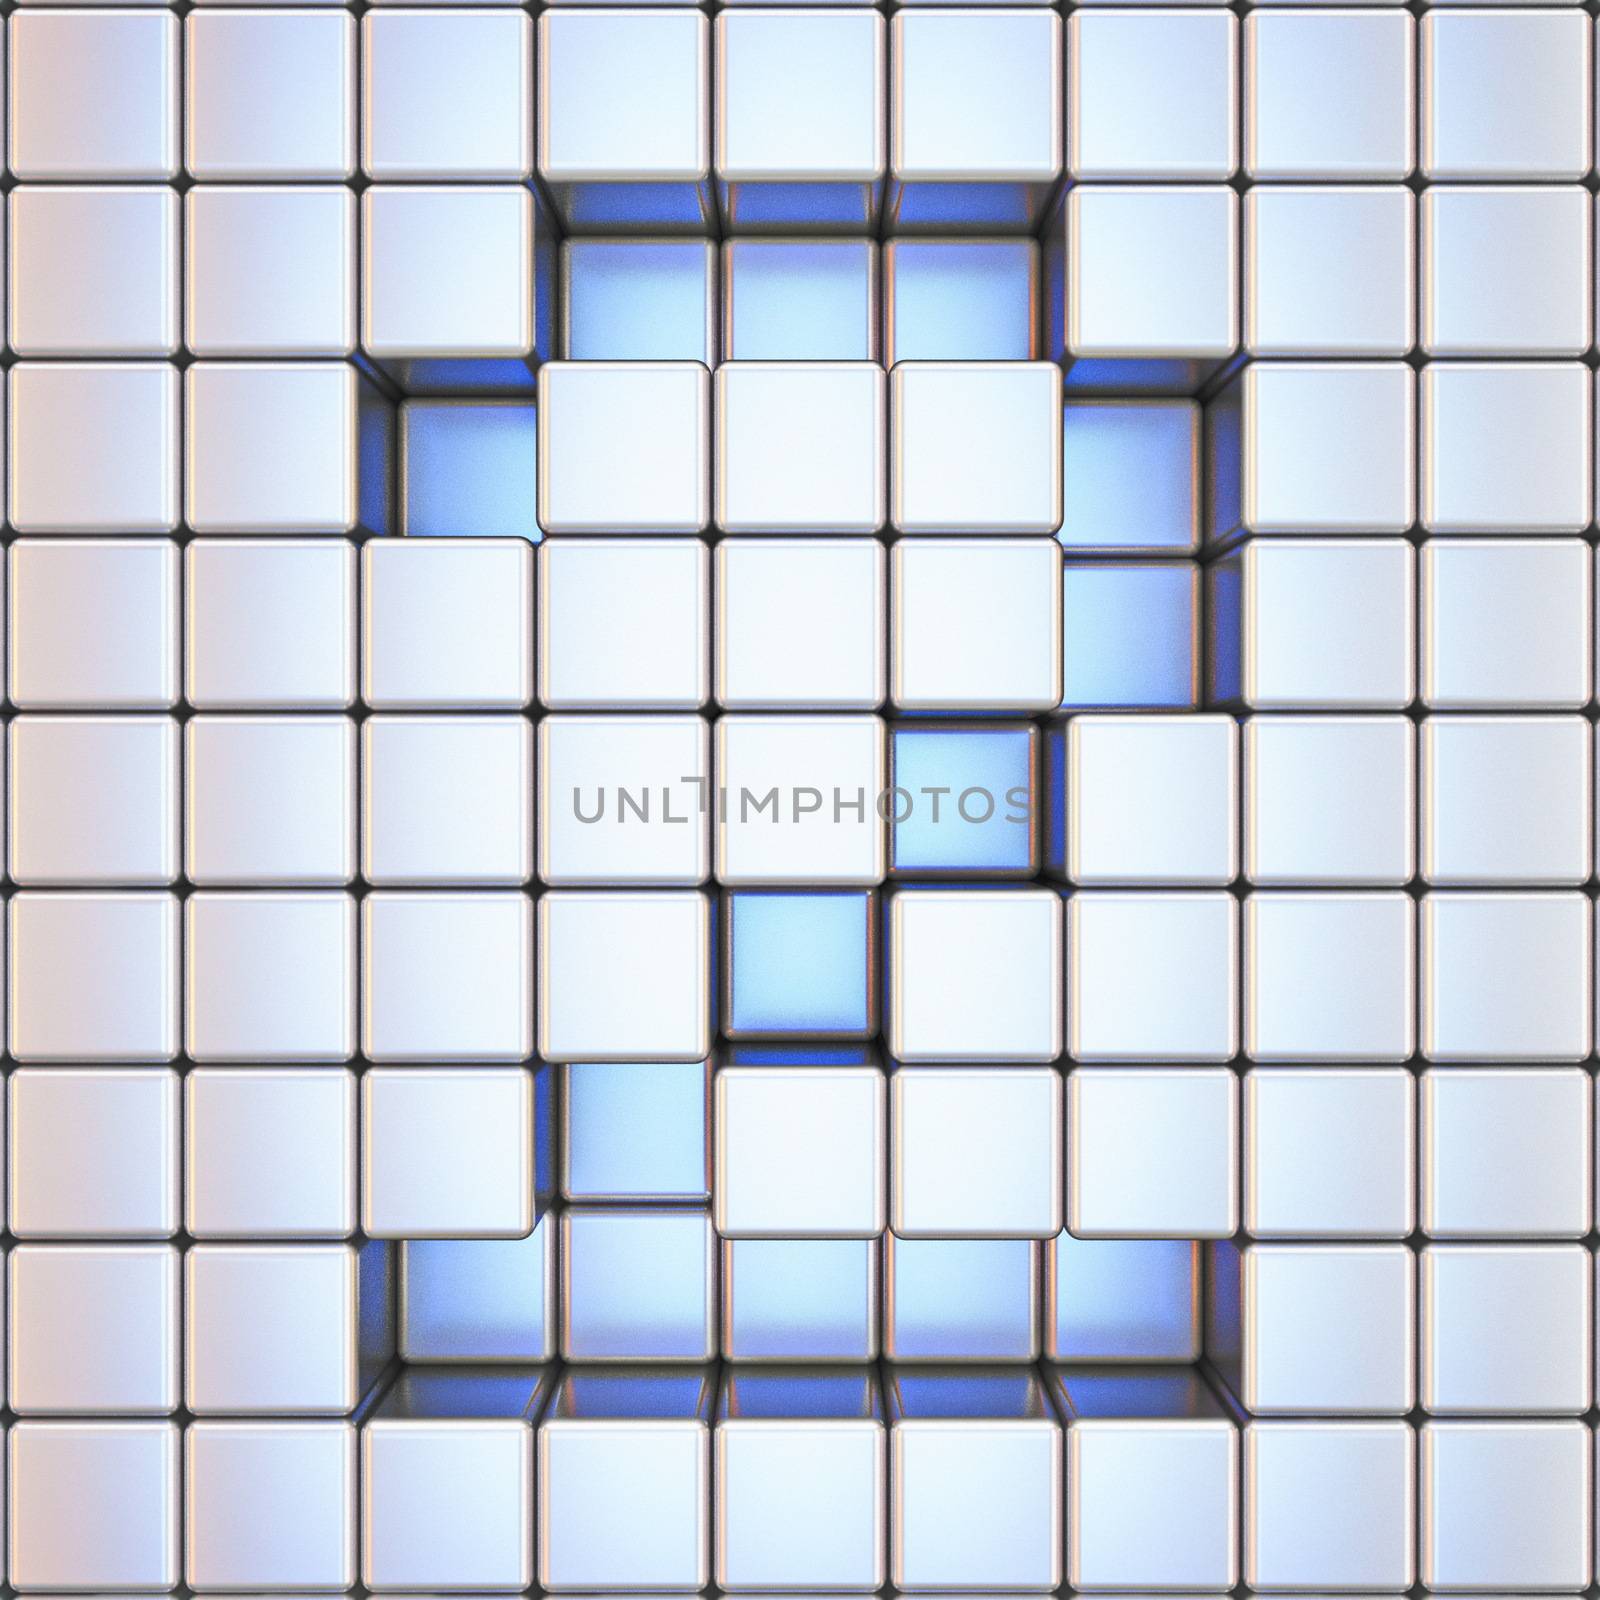 Cube grid Number 2 TWO 3D render illustration